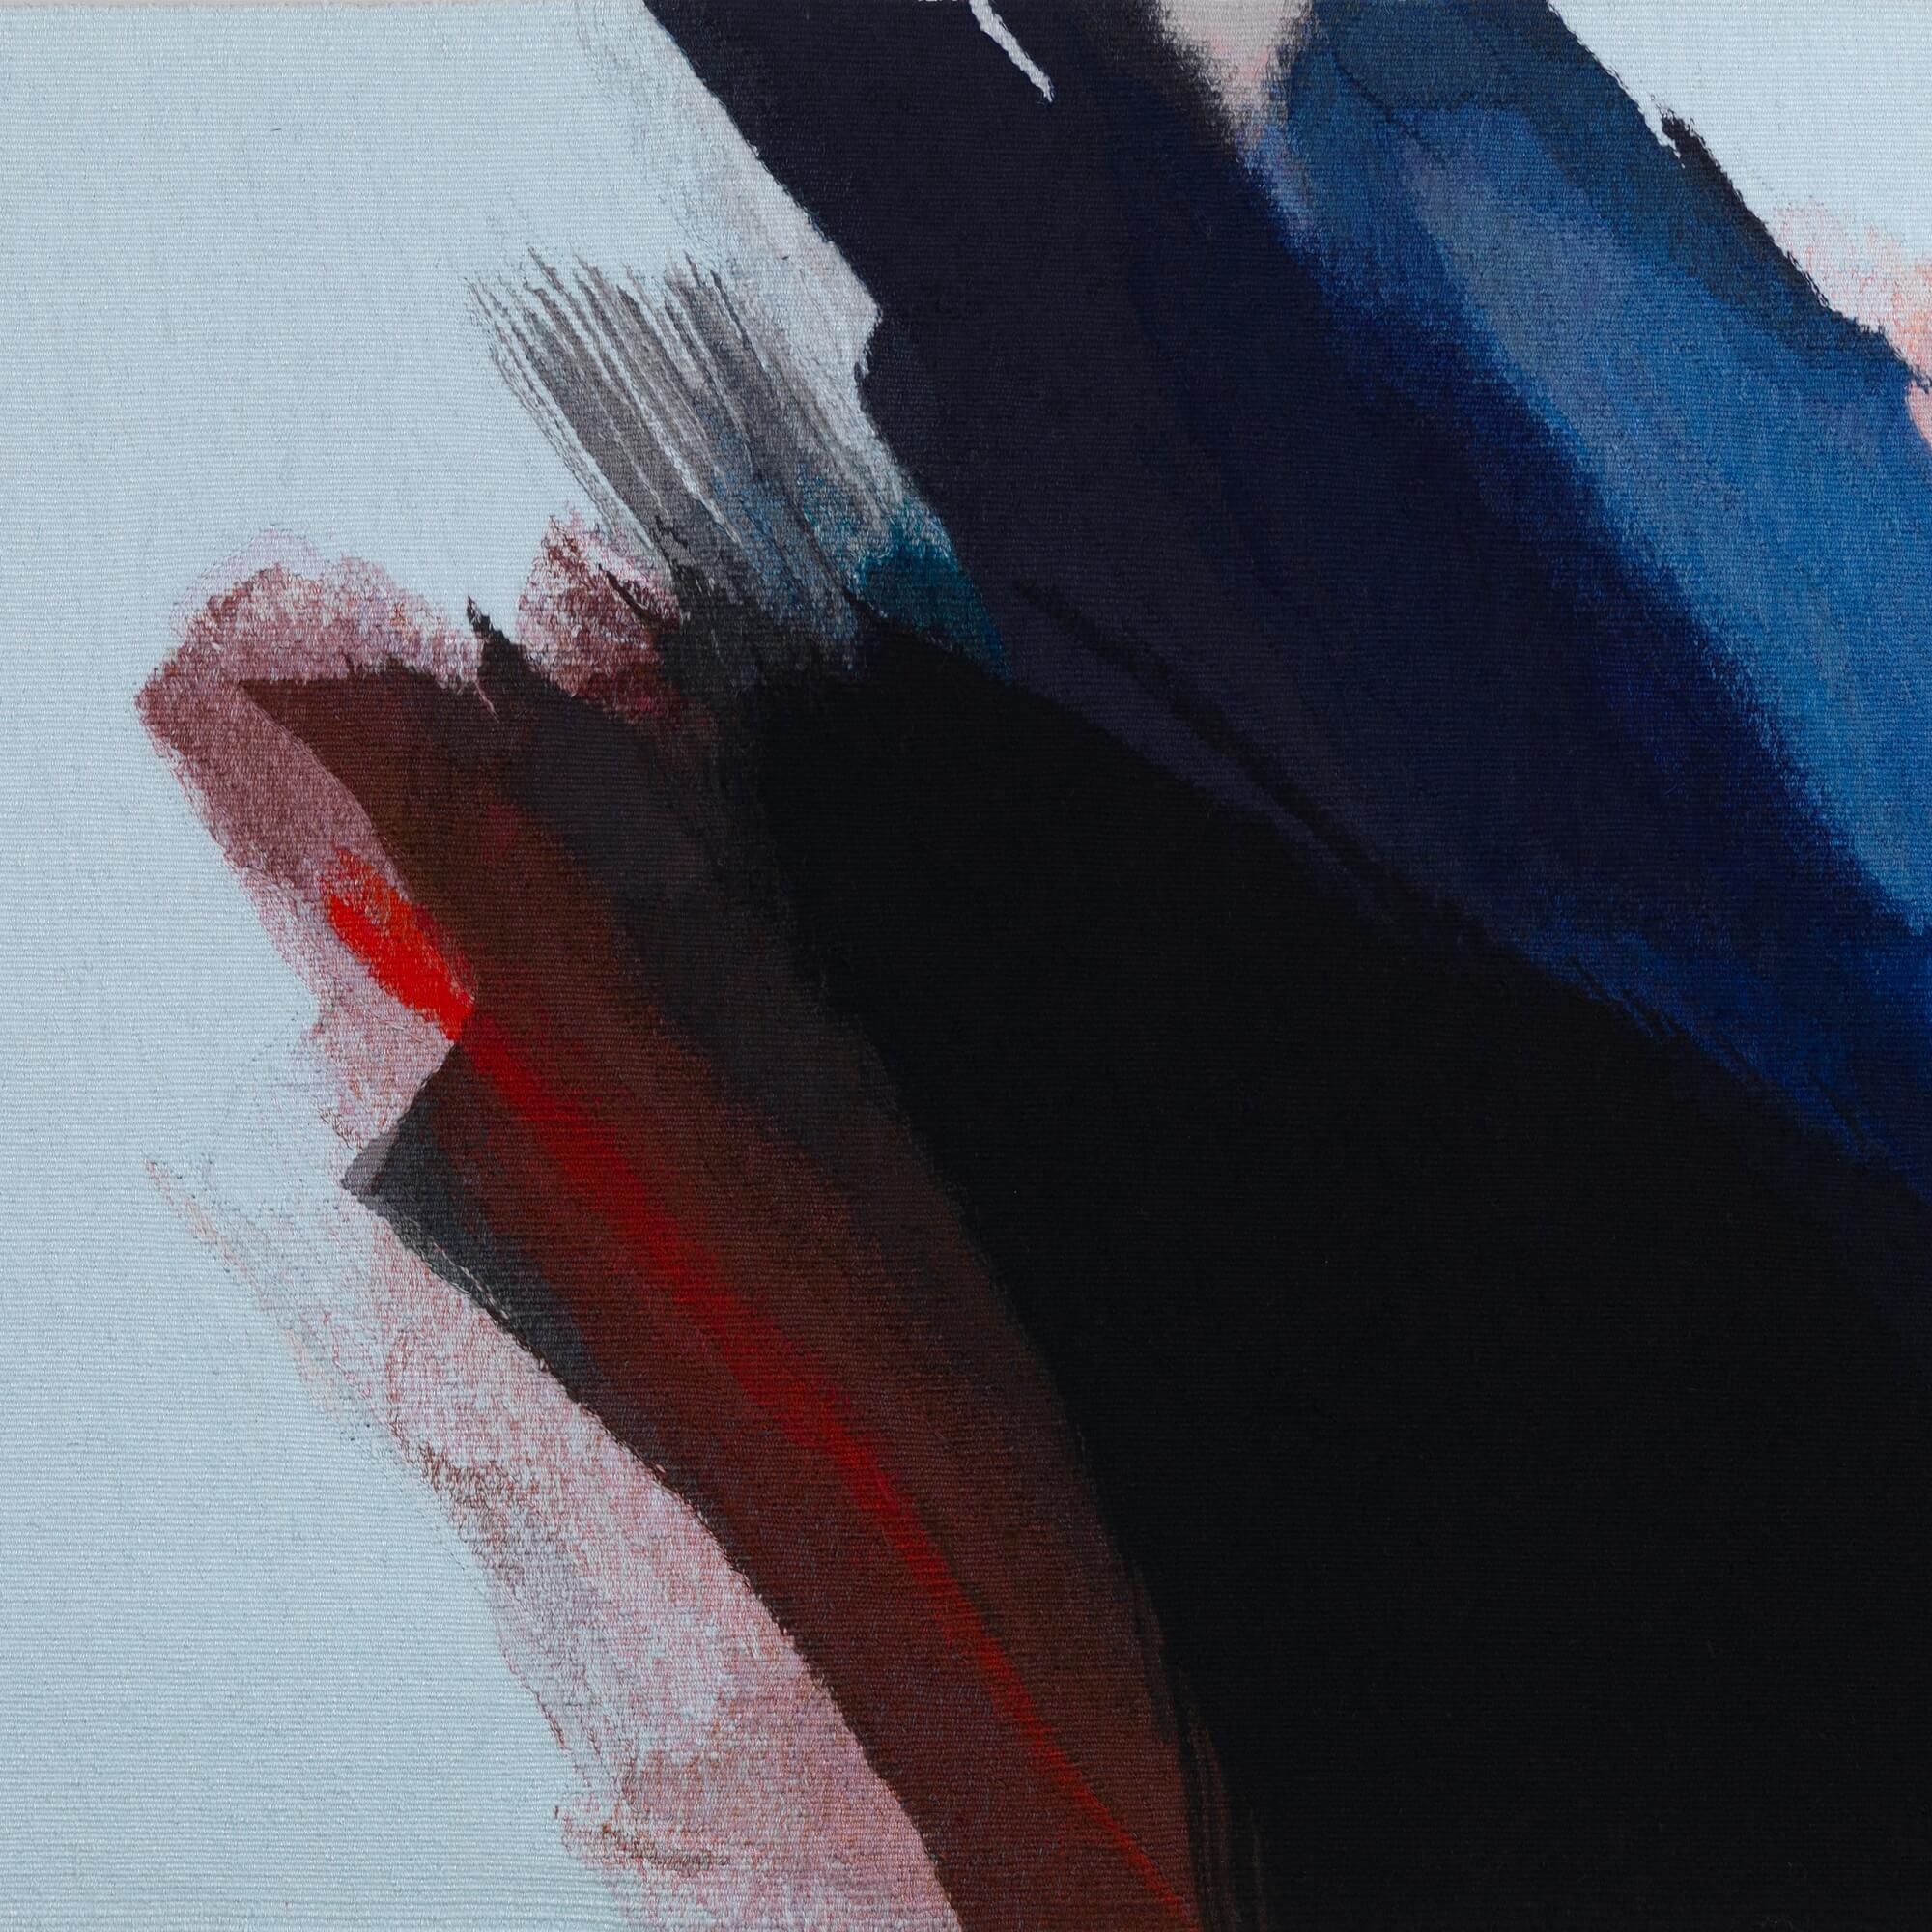 Fleeting moment est typique des tapisseries complexes de Jo Barker qui explorent les qualités et les motifs de la lumière. L'encre profonde de la texture des coups de pinceau est parsemée de mouchetures de couleurs vives : rouge, bleu et rose, sur